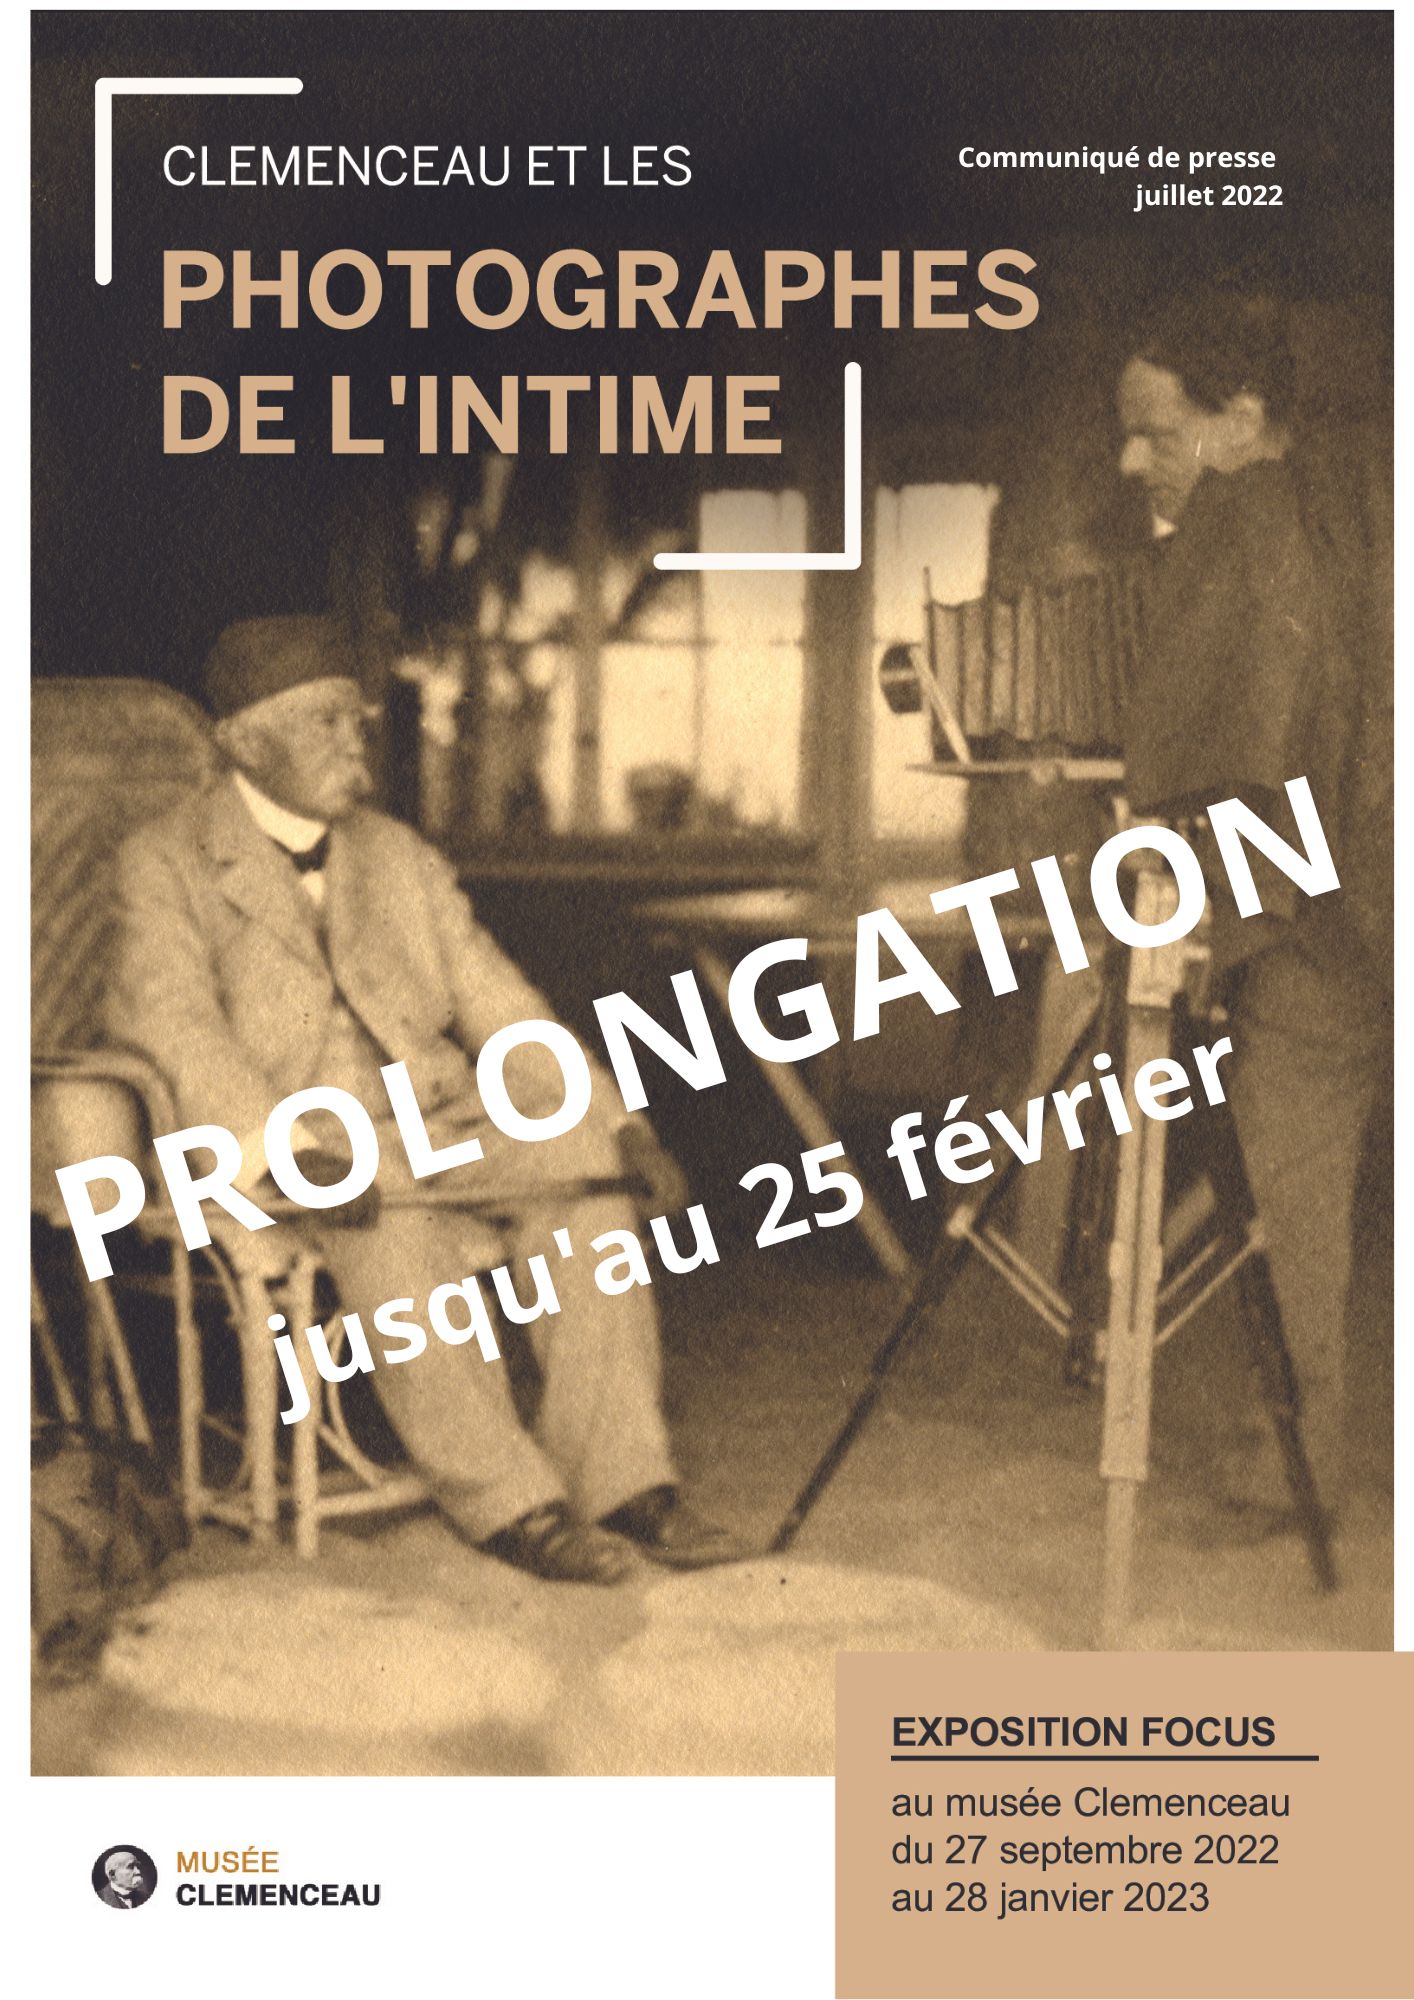 programme-clemenceau-et-les-photographes-de-lintime-2022-2